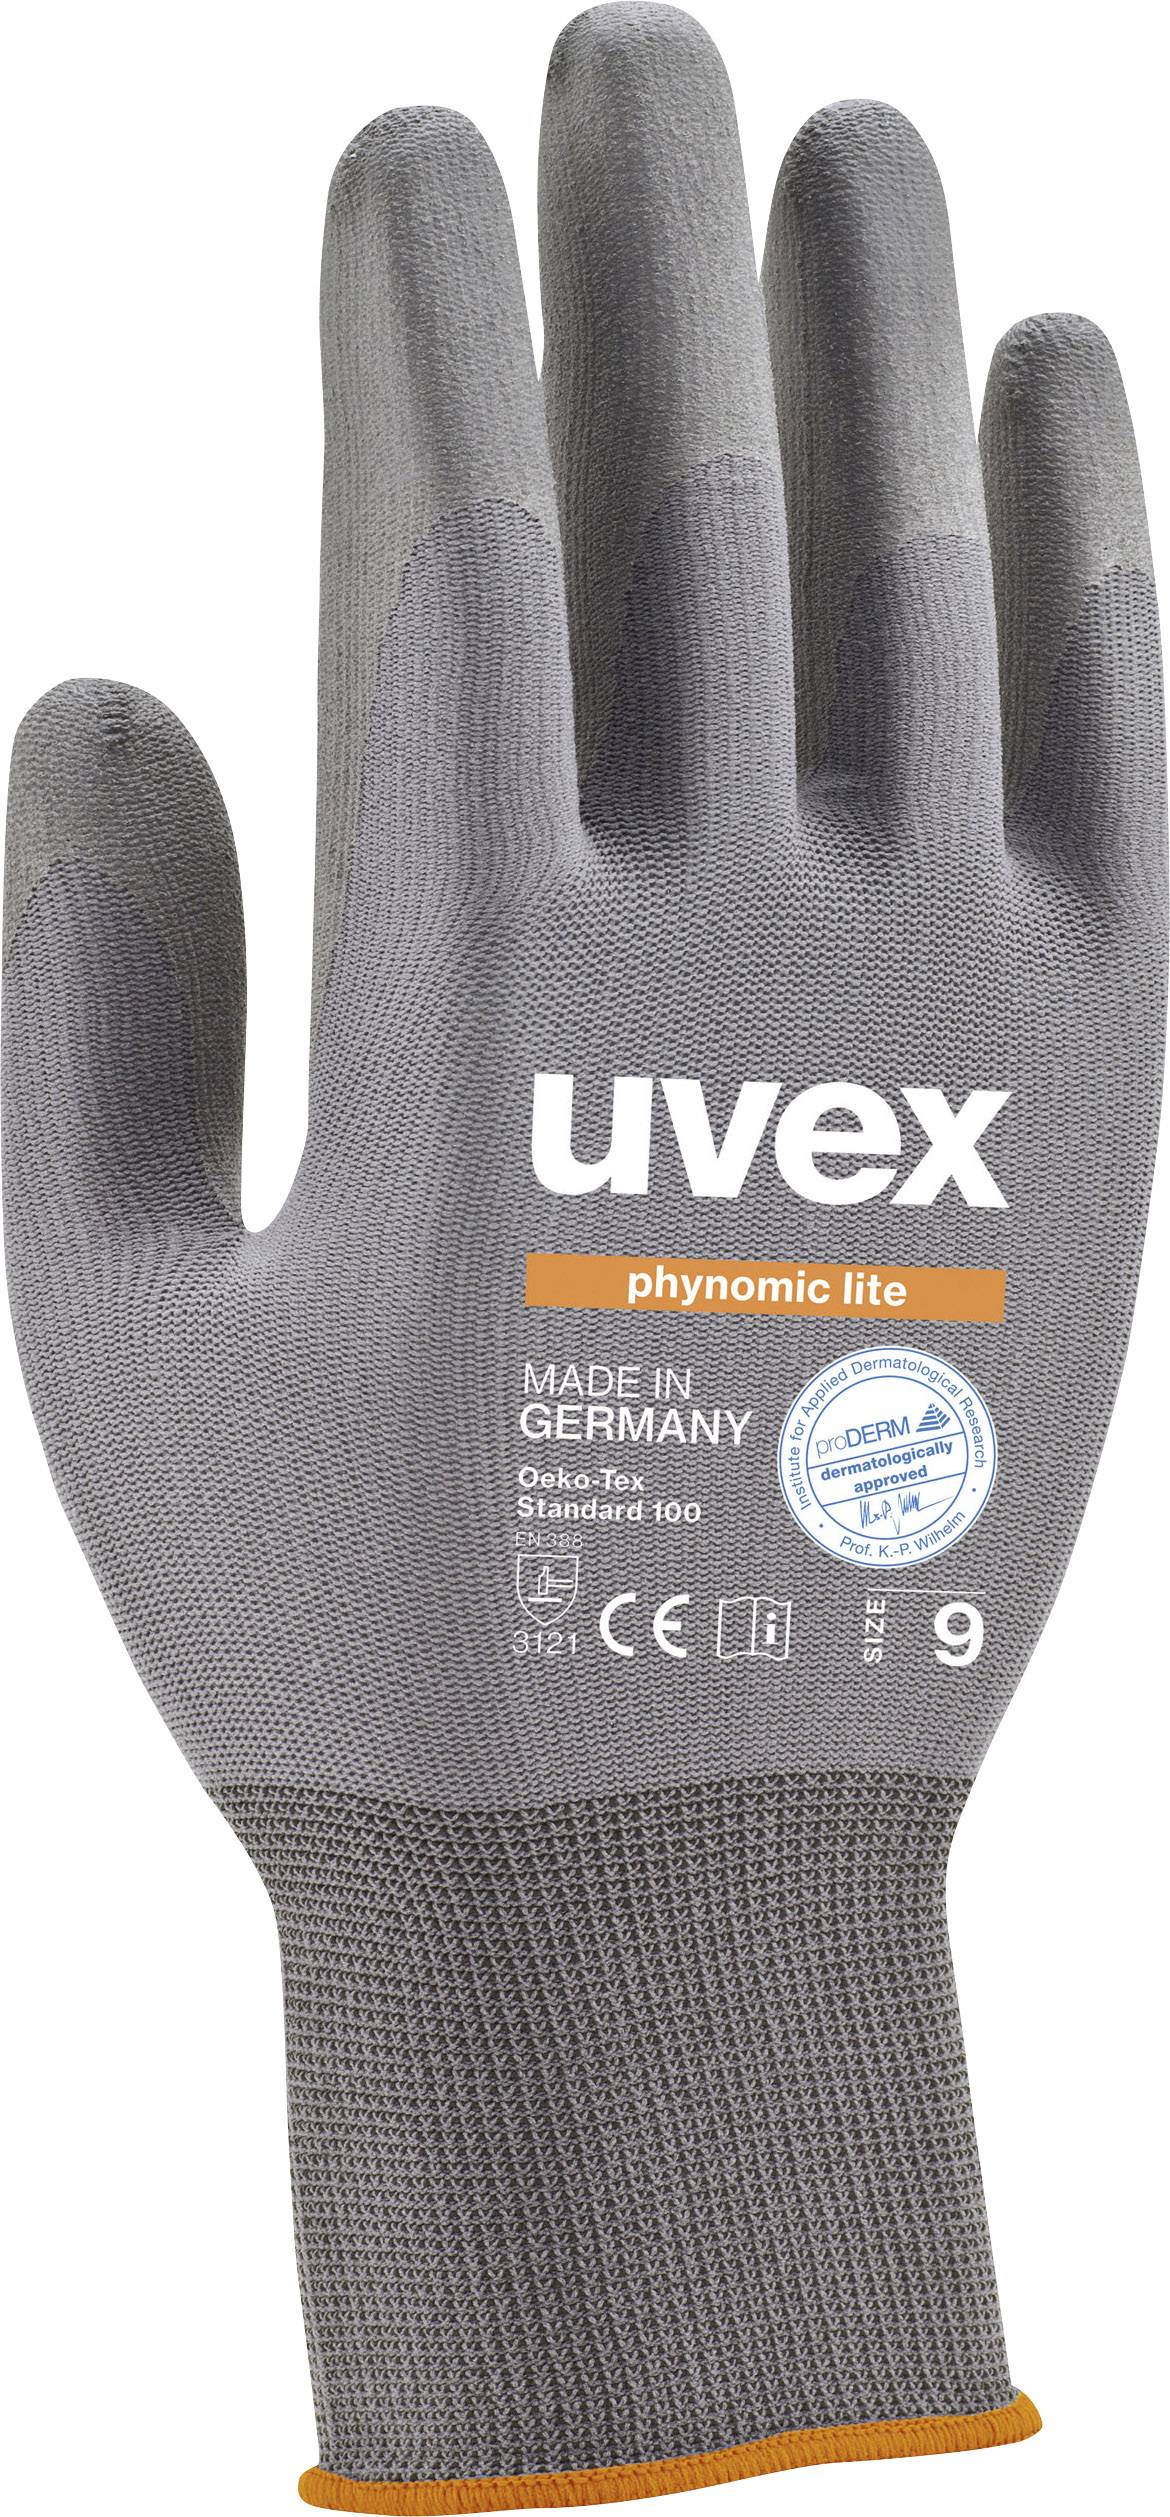 UVEX 6004011 Schutzhandschuh phynomic lite Größe (Handschuhe): 11 (6004011)